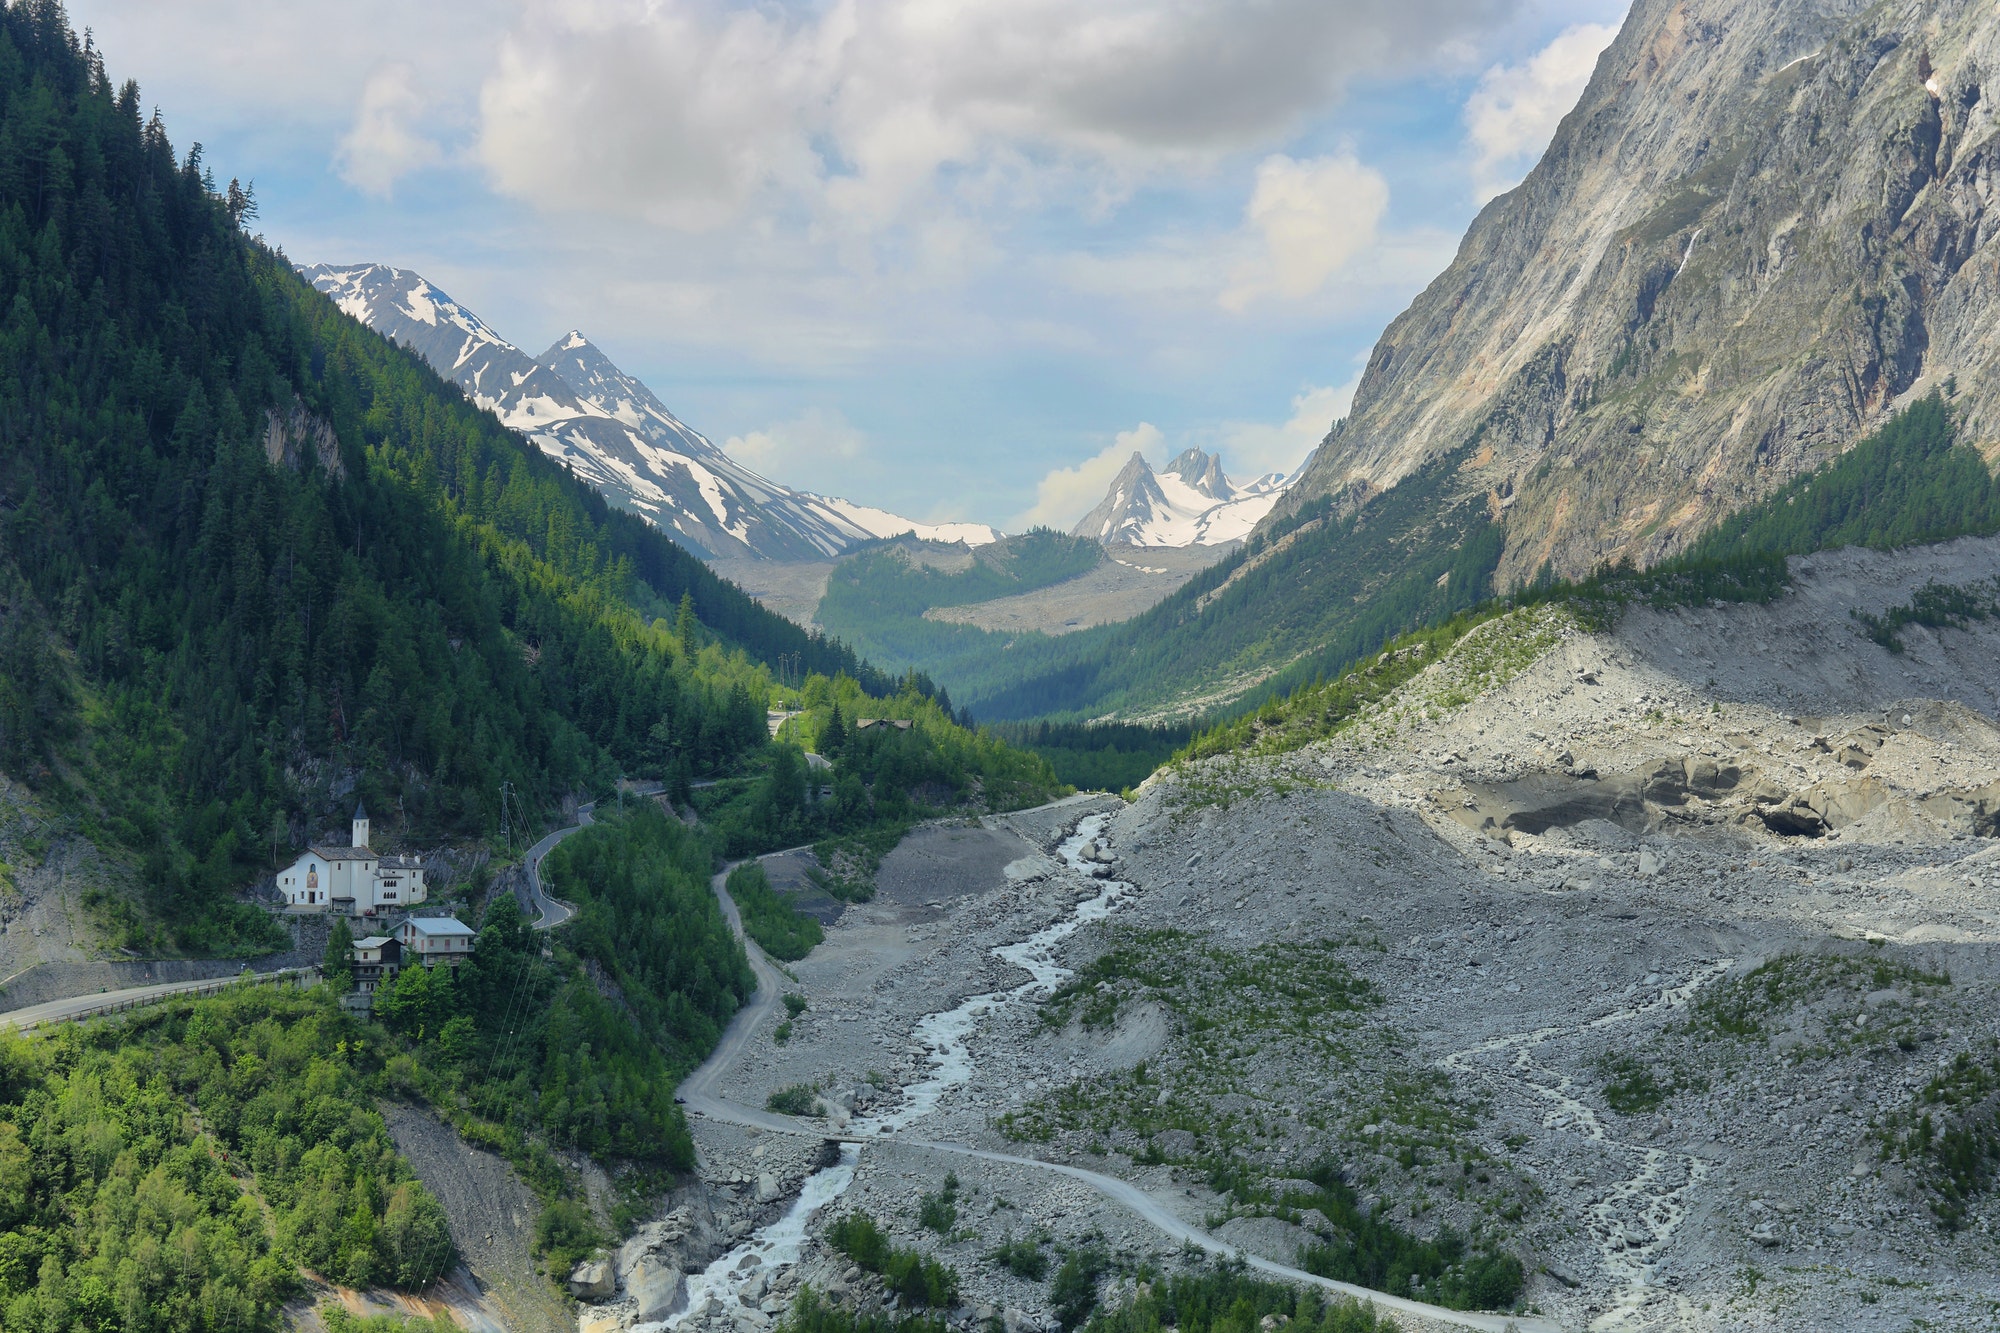 Veny Valley, Val d'Aosta - Italy. River Dora veny